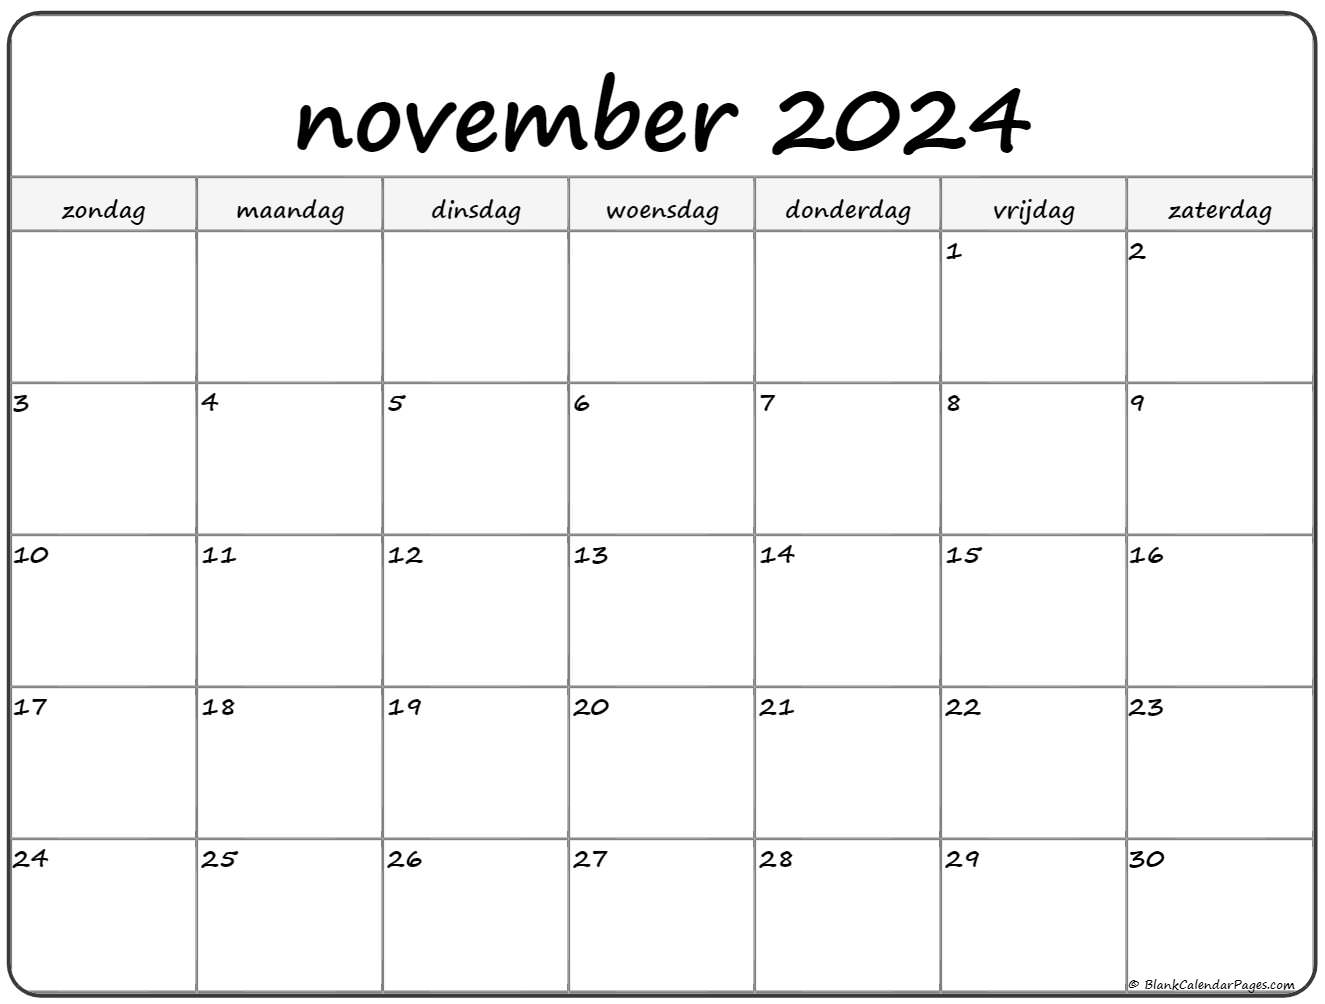 2021 11 kalender bulan